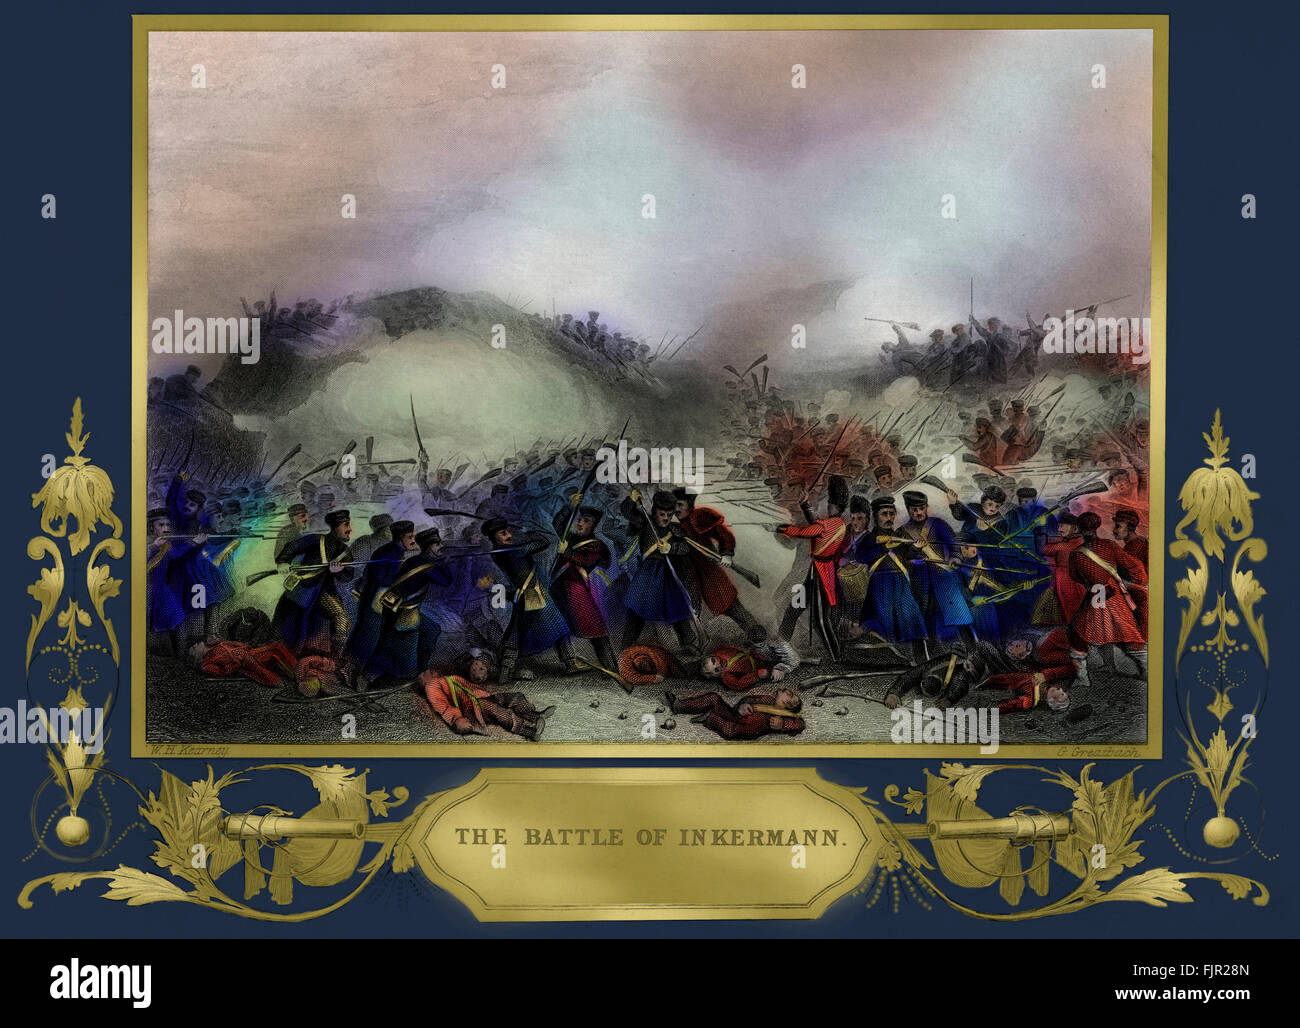 La batalla de Inkerman fue combatido durante la Guerra de Crimea, el 5 de noviembre de 1854, entre los ejércitos aliados de Francia y Gran Bretaña contra el Ejército Imperial Ruso. Grabado por G. Greatbach. Foto de stock